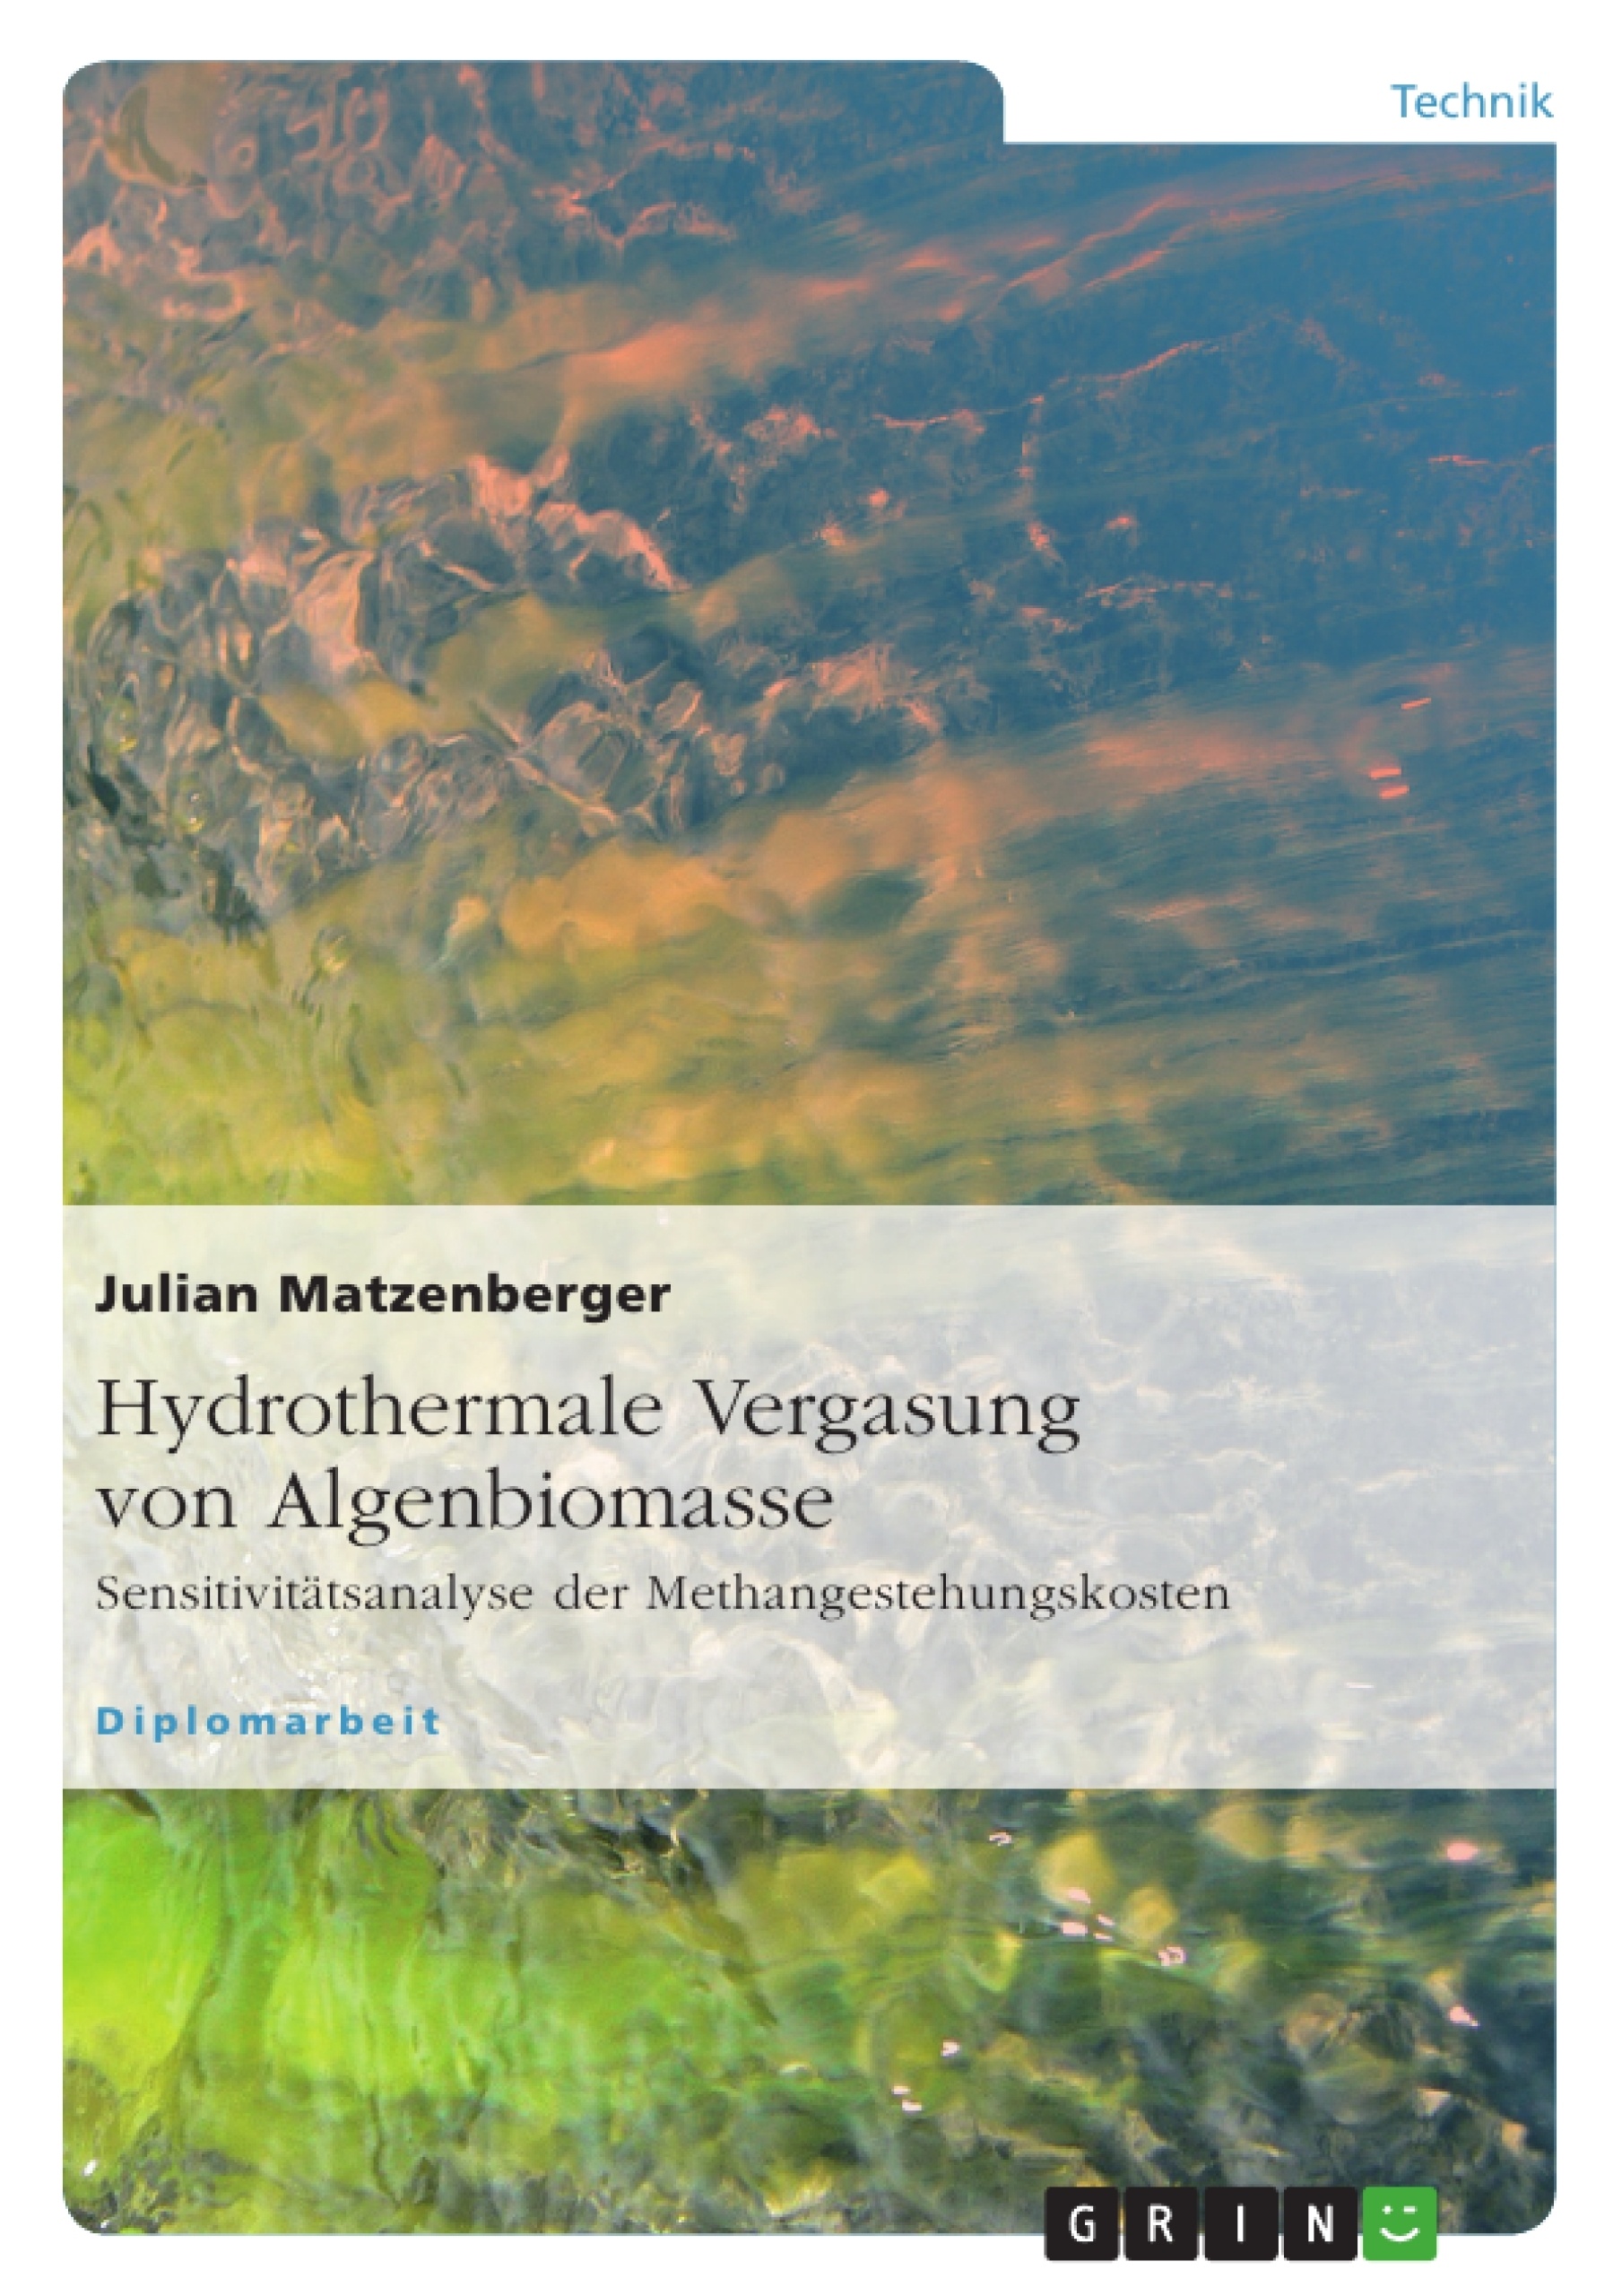 Titre: Hydrothermale Vergasung von Algenbiomasse